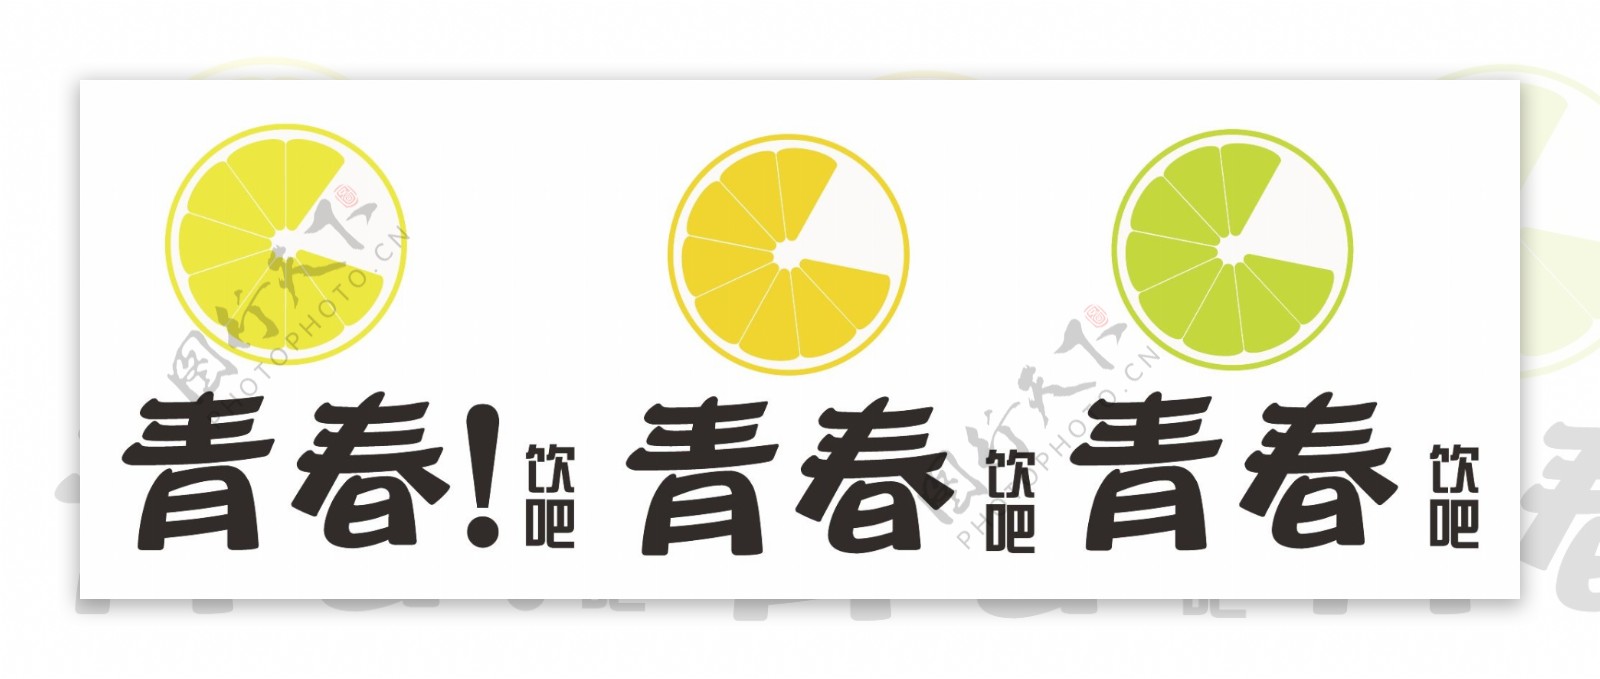 茶饮logo